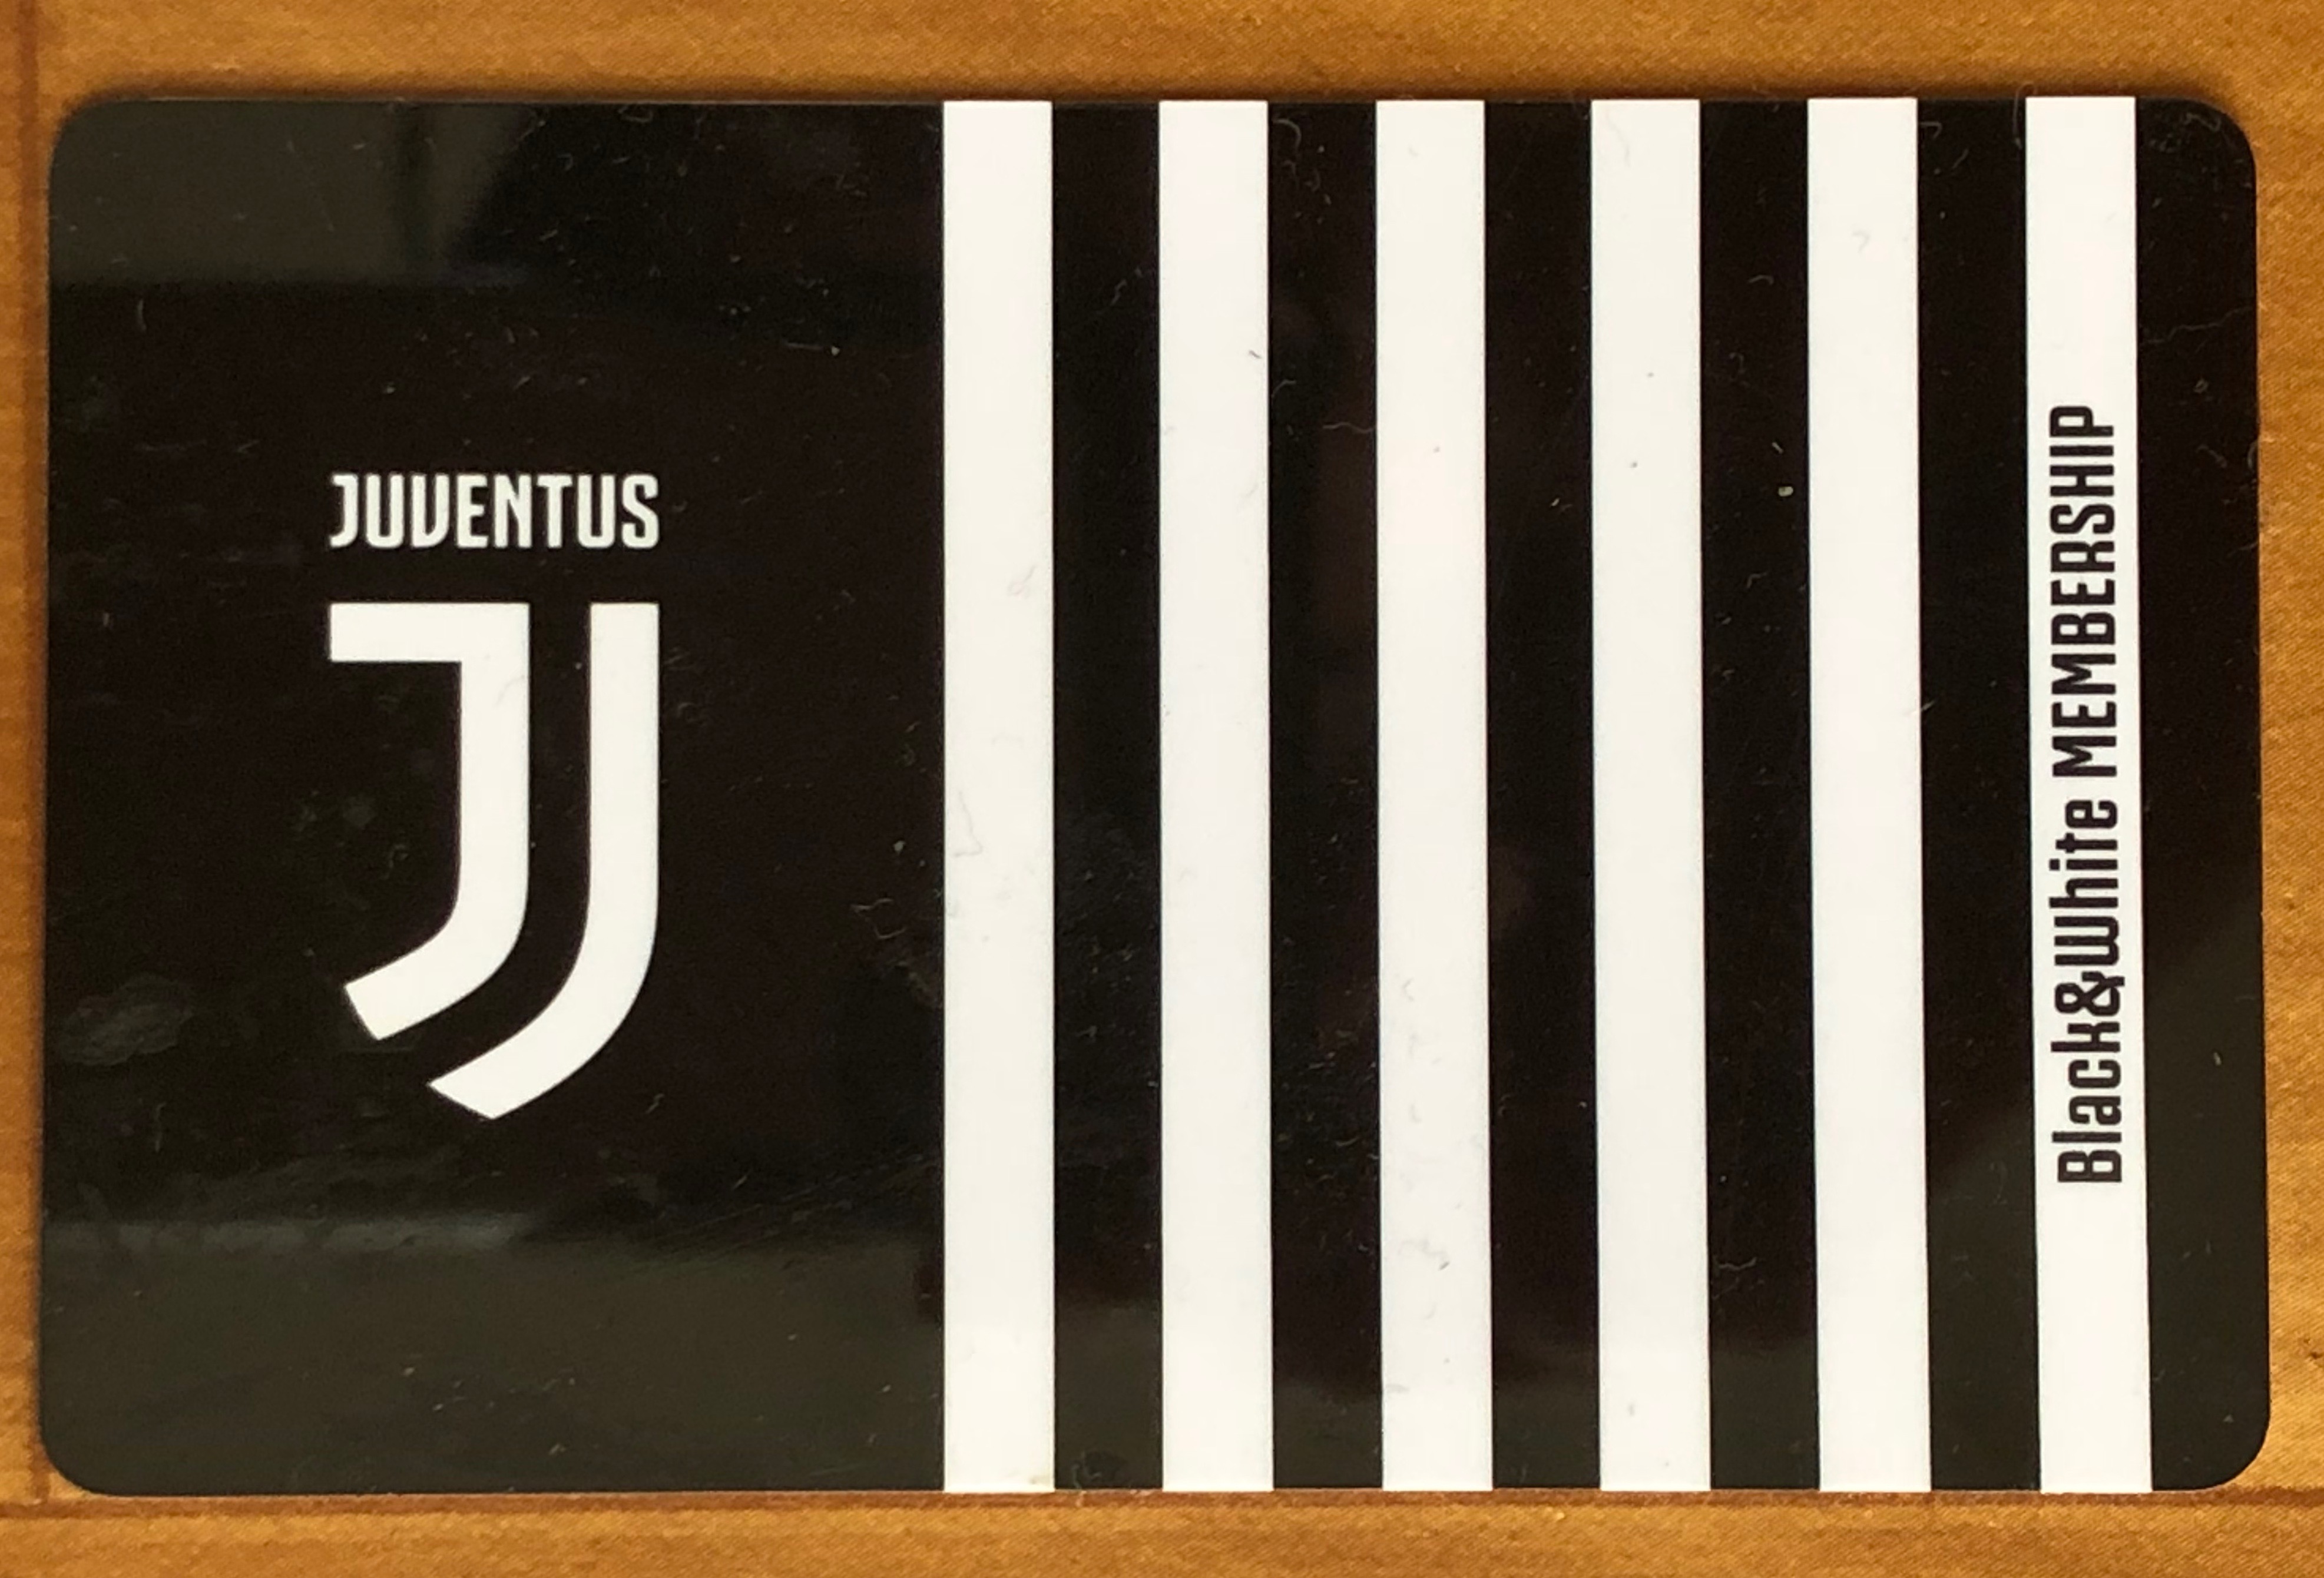 Juventus-ticket